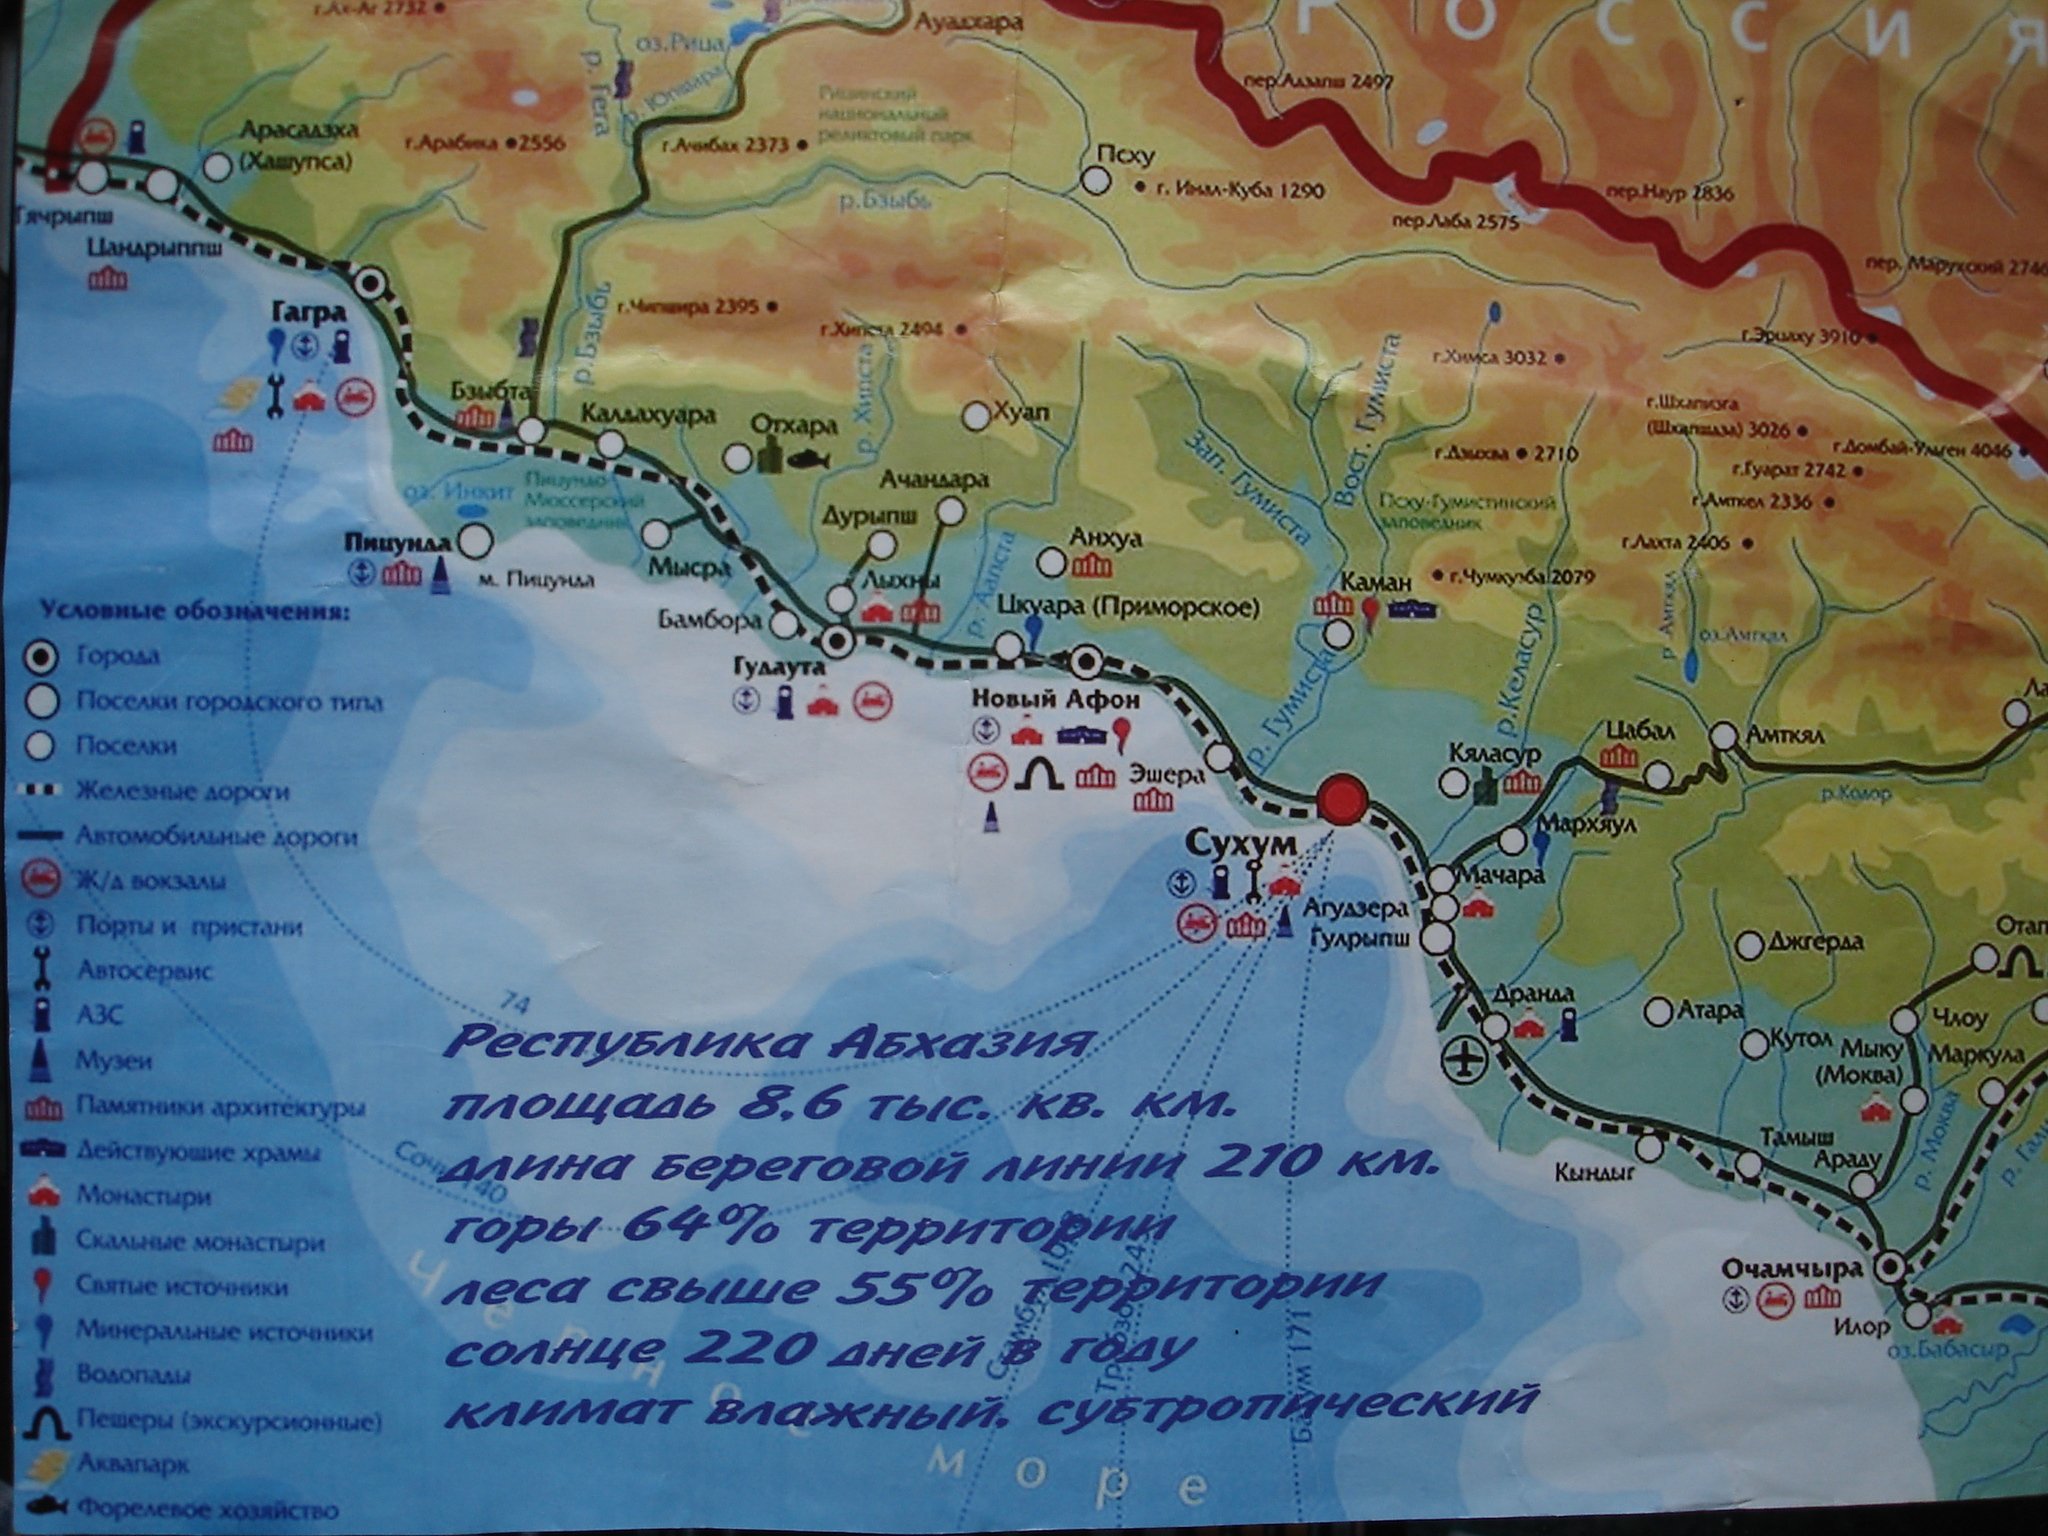 Пансионаты карта абхазия. Карта Абхазии побережье черного. Карта Абхазии с поселками. Карта побережья чёрного моря с городами и поселками Абхазия. Карта Абхазии побережье с поселками.